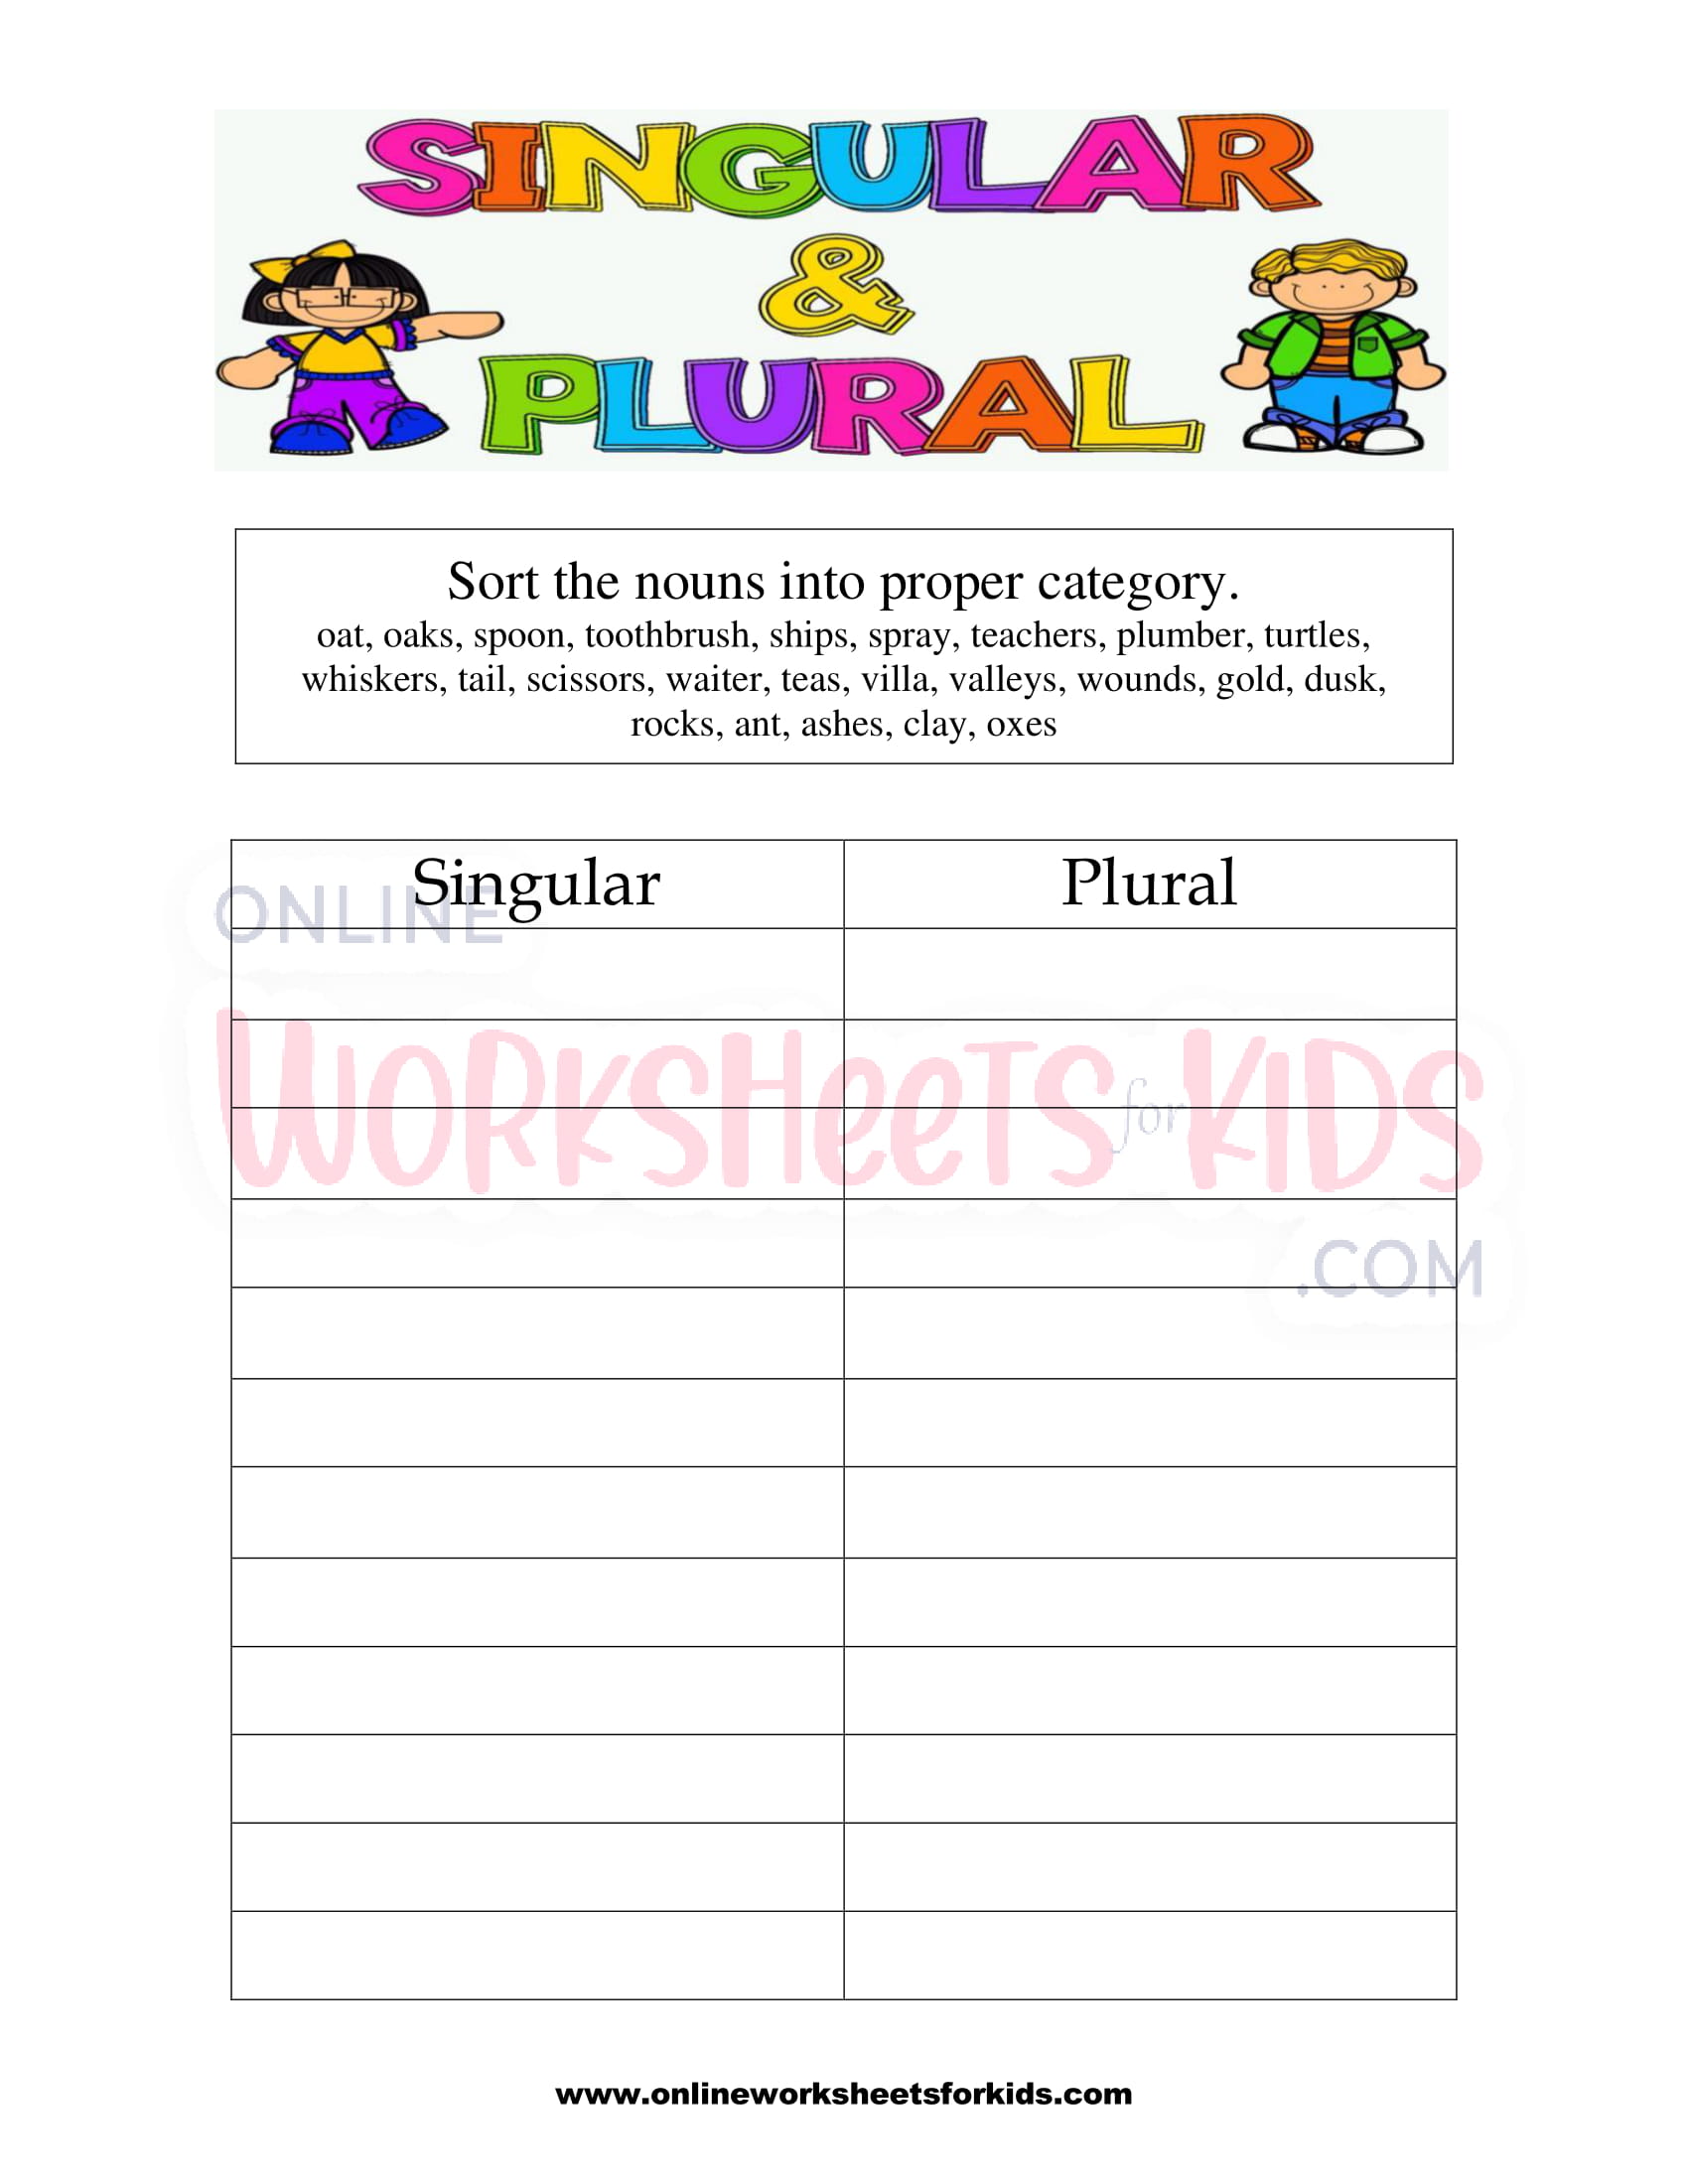 Is Plumber Singular Or Plural?